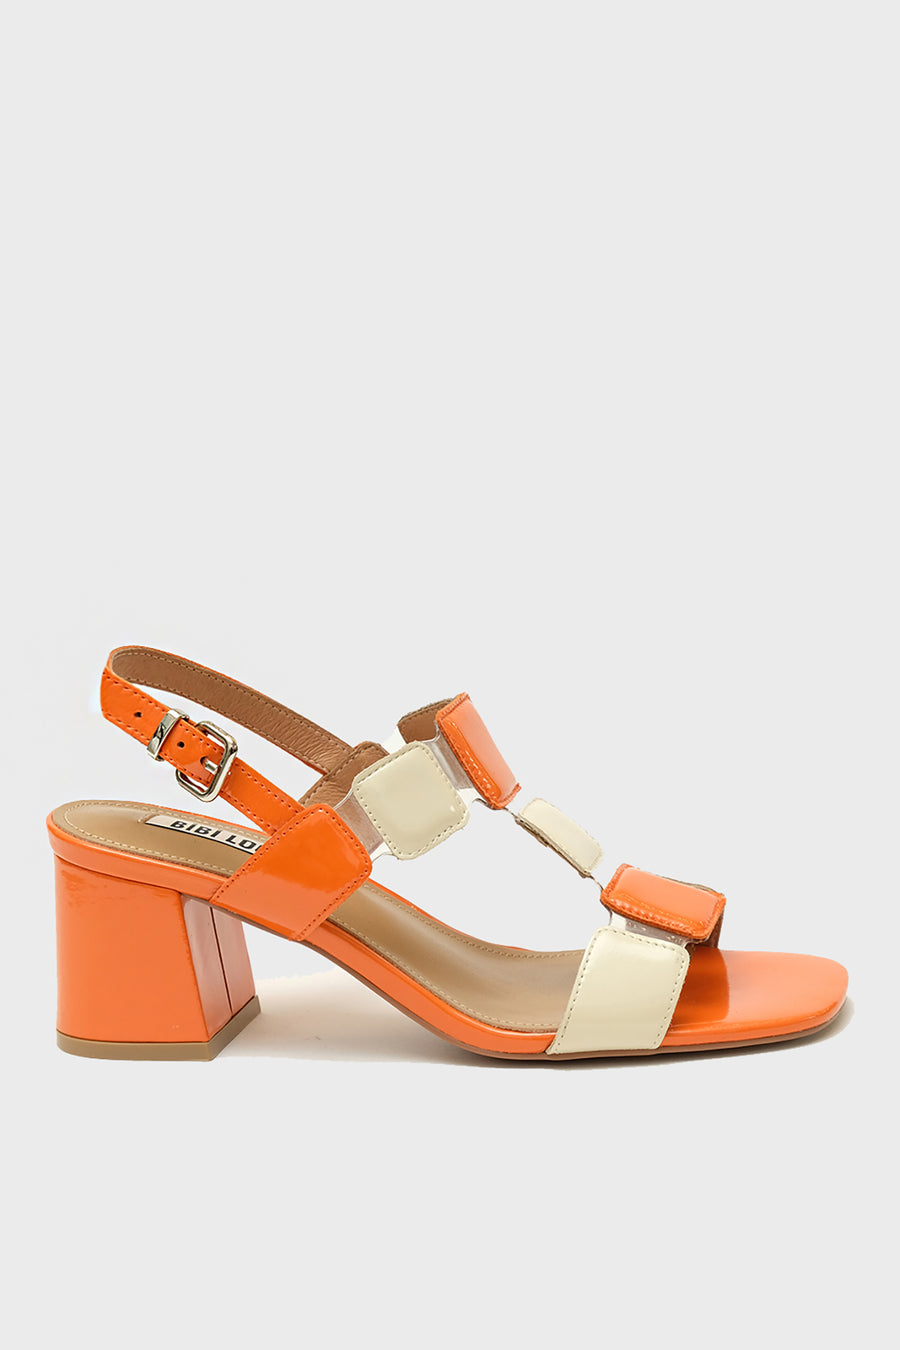 Sandalo Bibi Lou in vernice arancione e panna  703z23vk